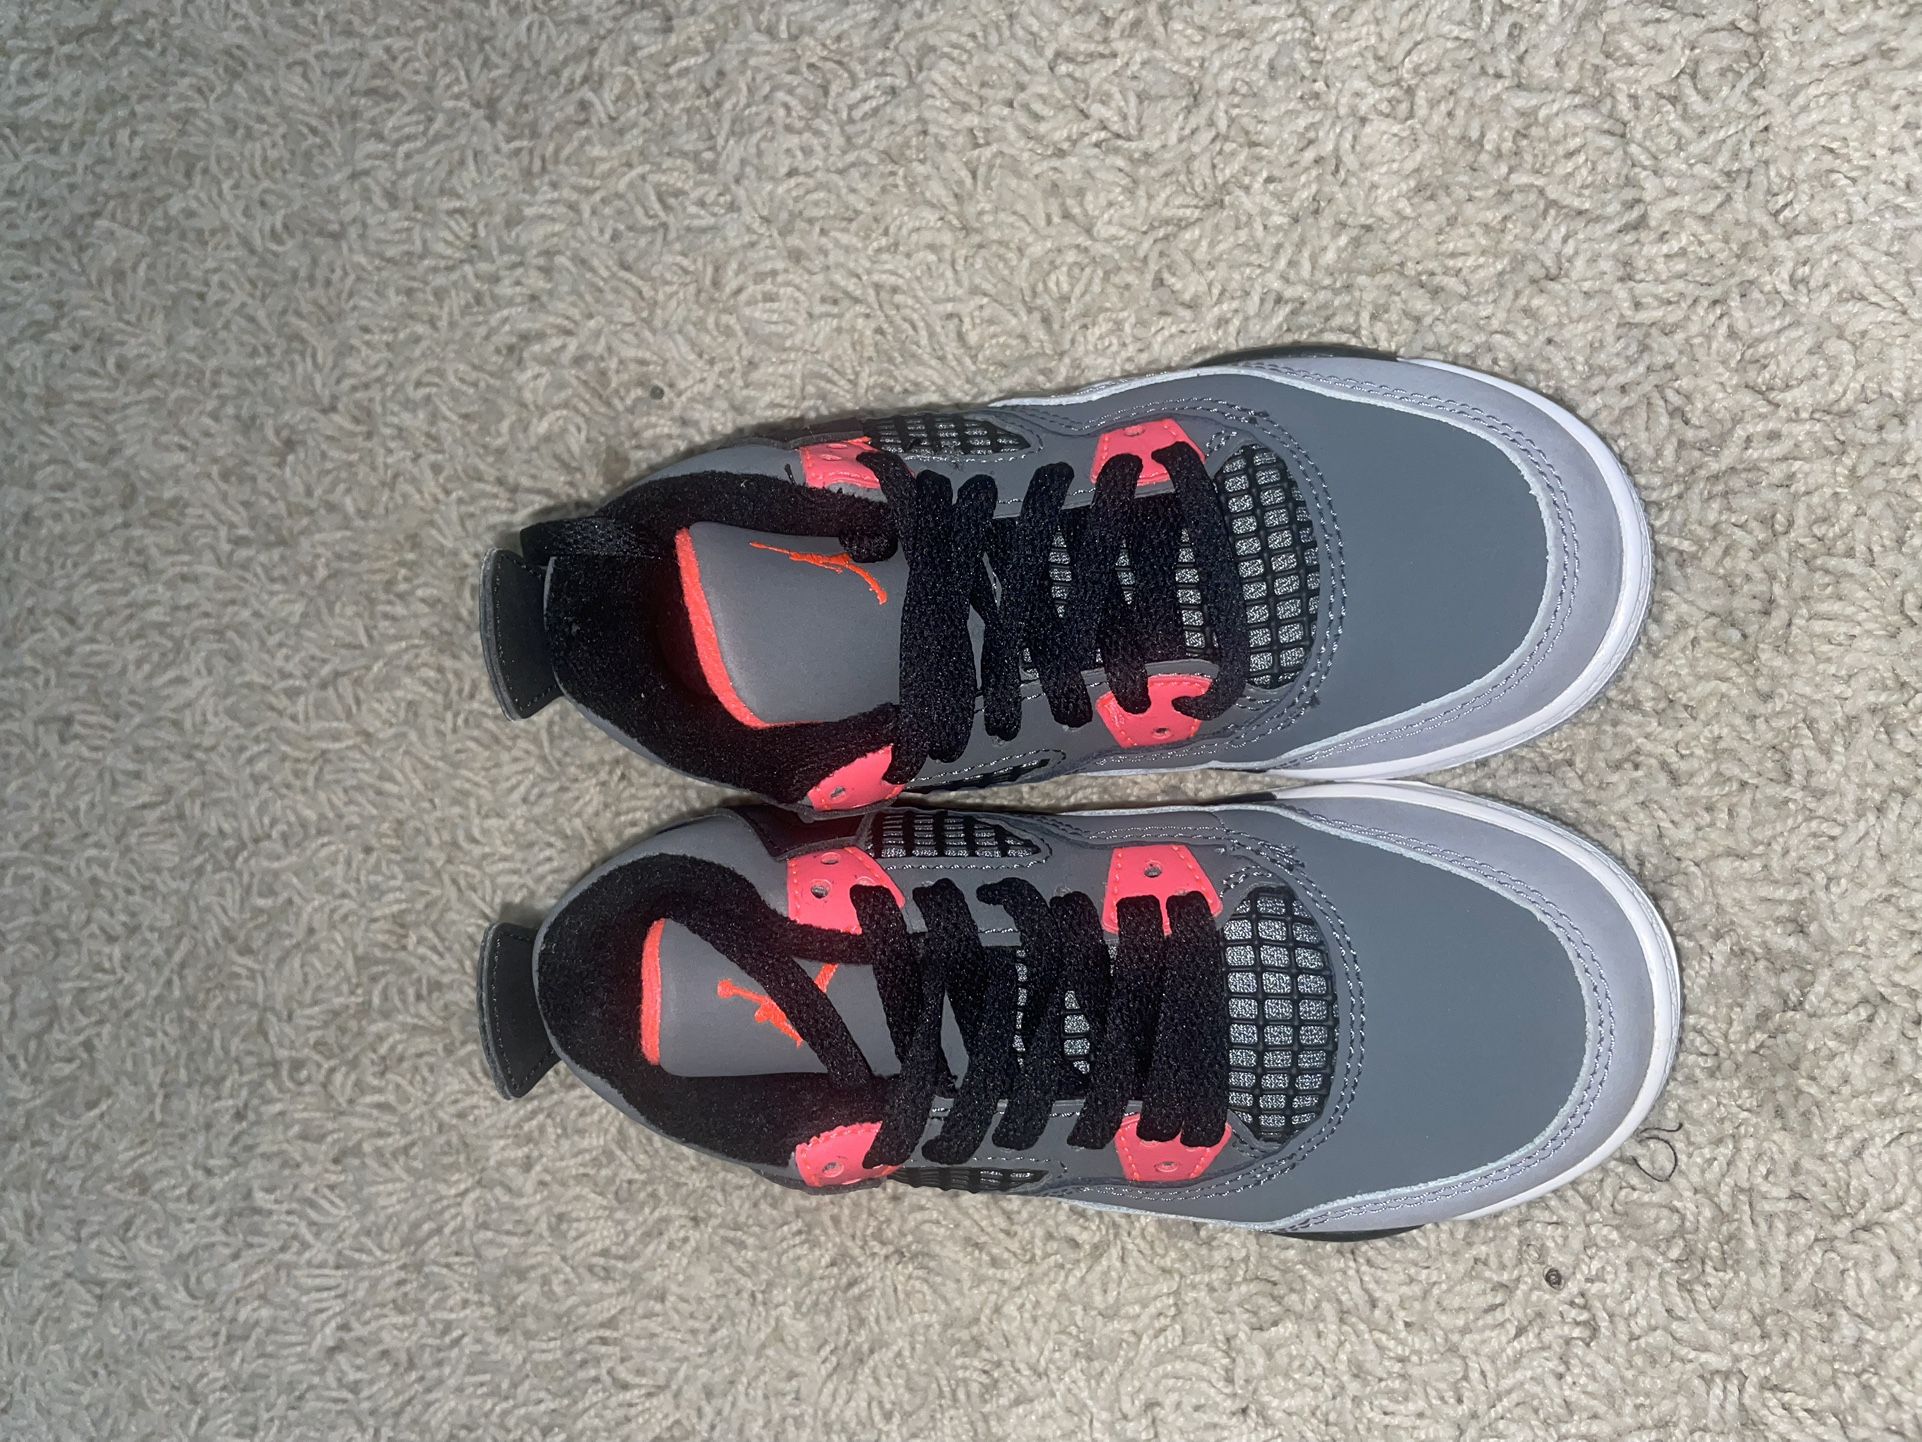 Nike Jordan 4 Infrared (PS) Size :10.5